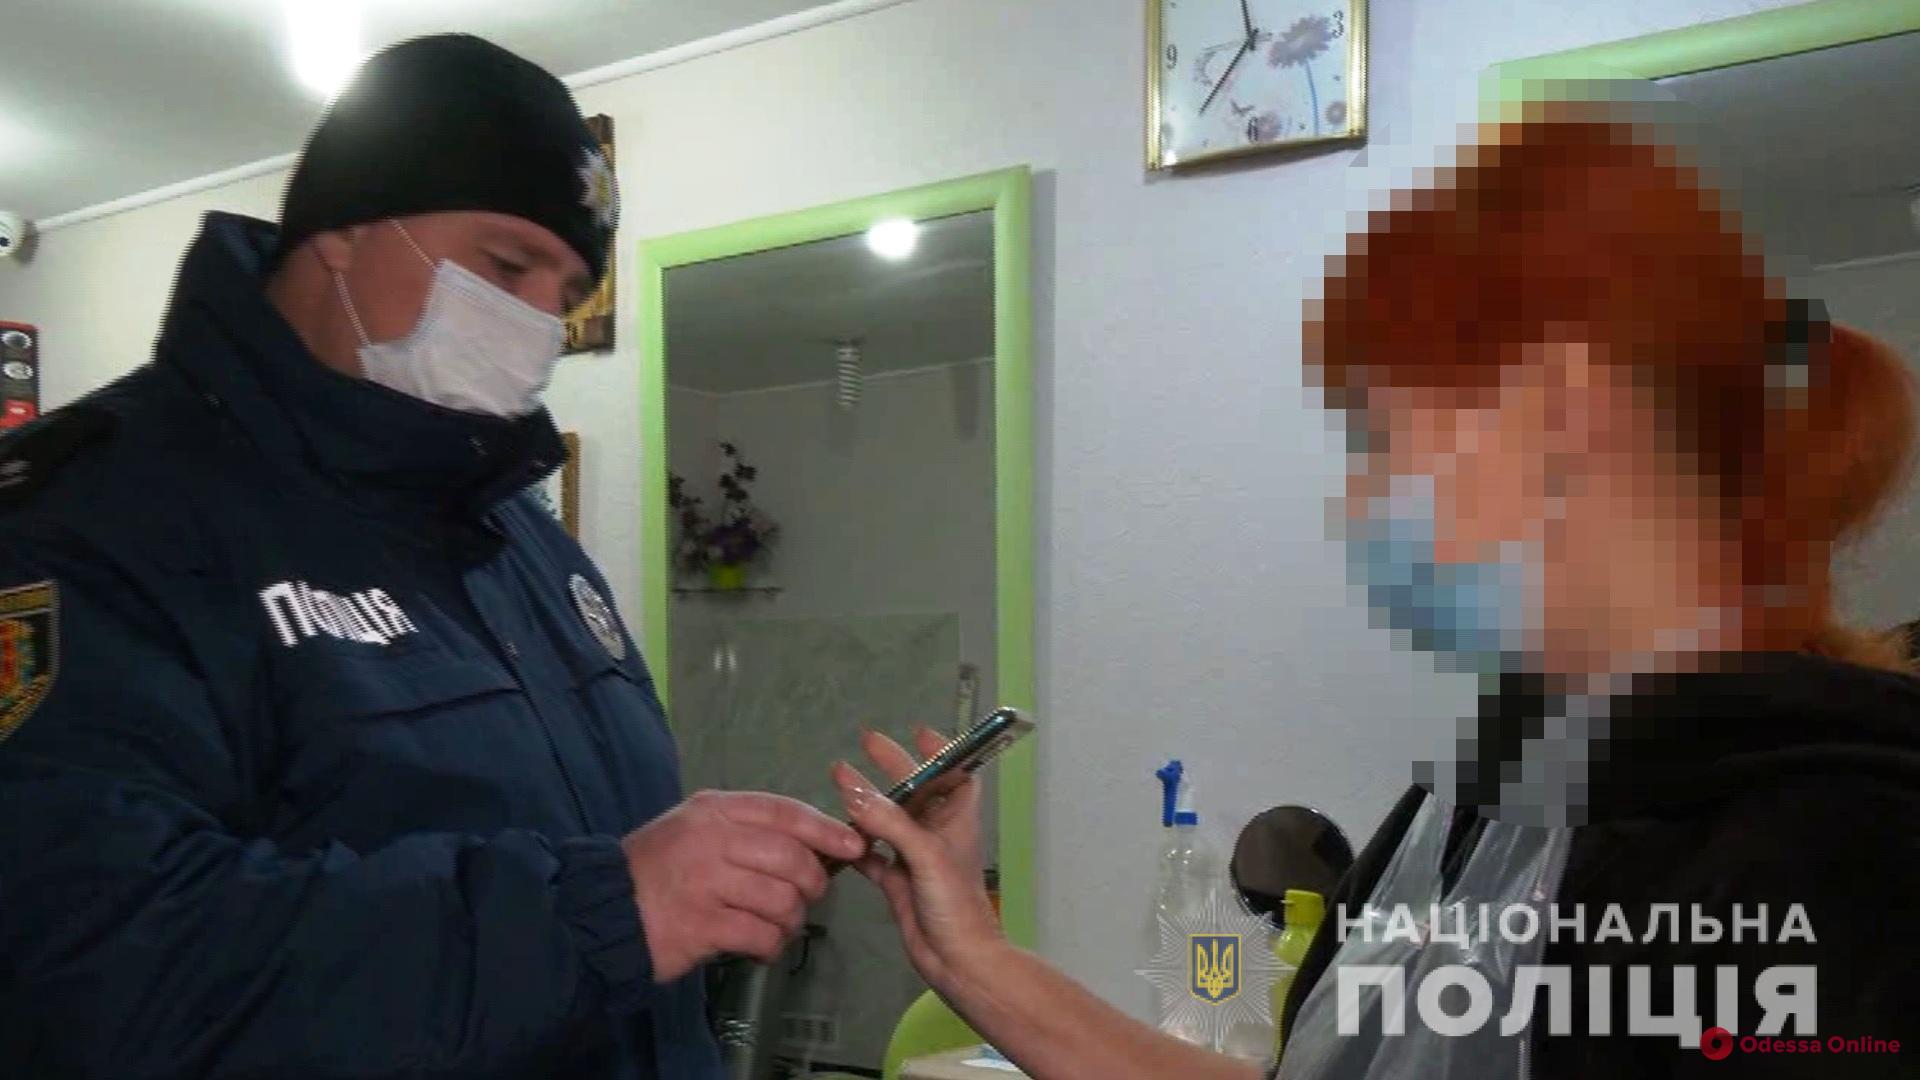 Одесская область: за неделю мобильные группы составили более 670 админпротоколов на нарушителей карантина